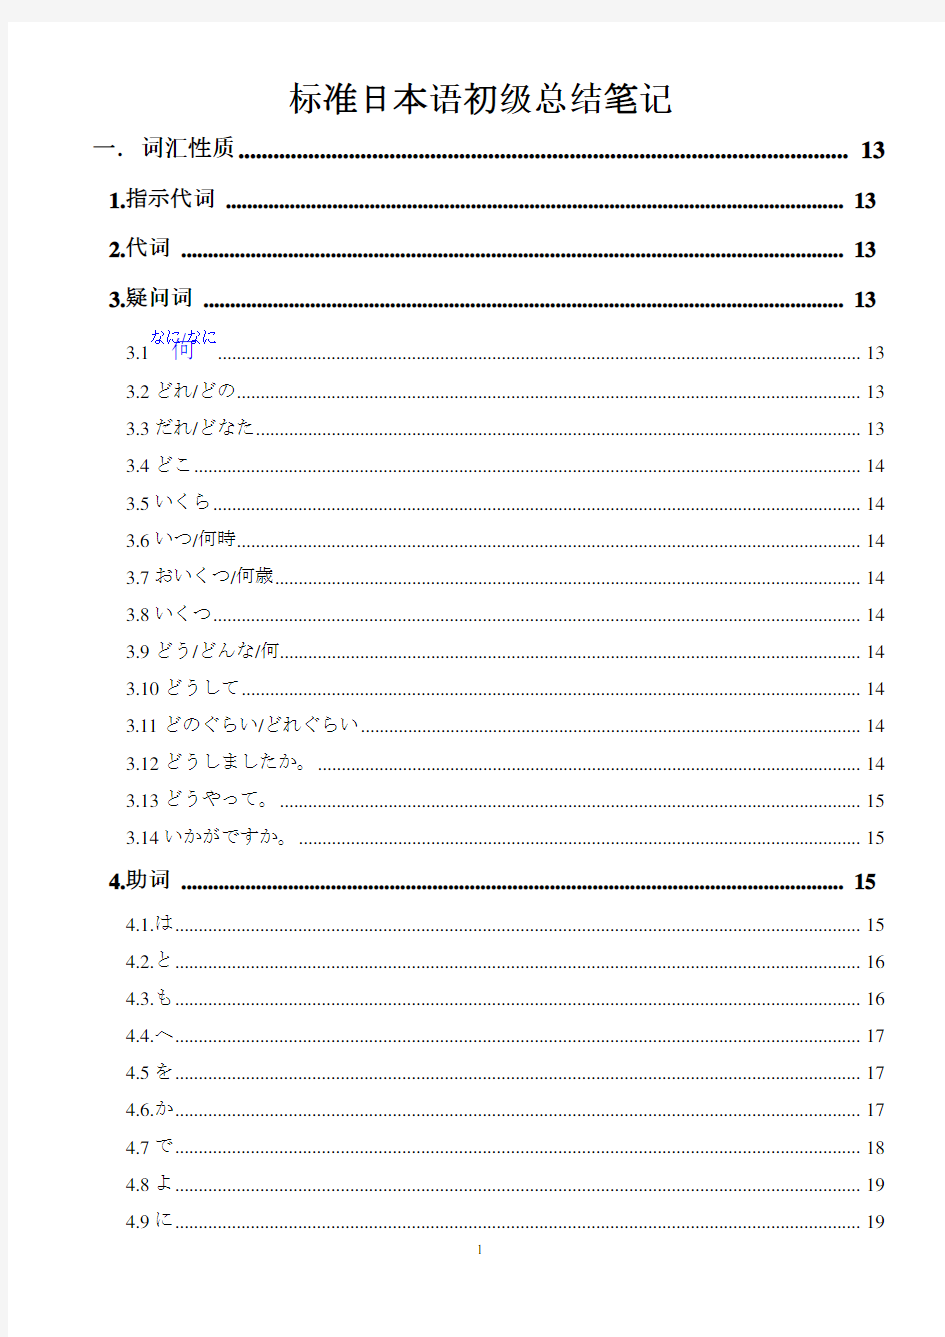 标准日本语初级上下册超详细总结笔记